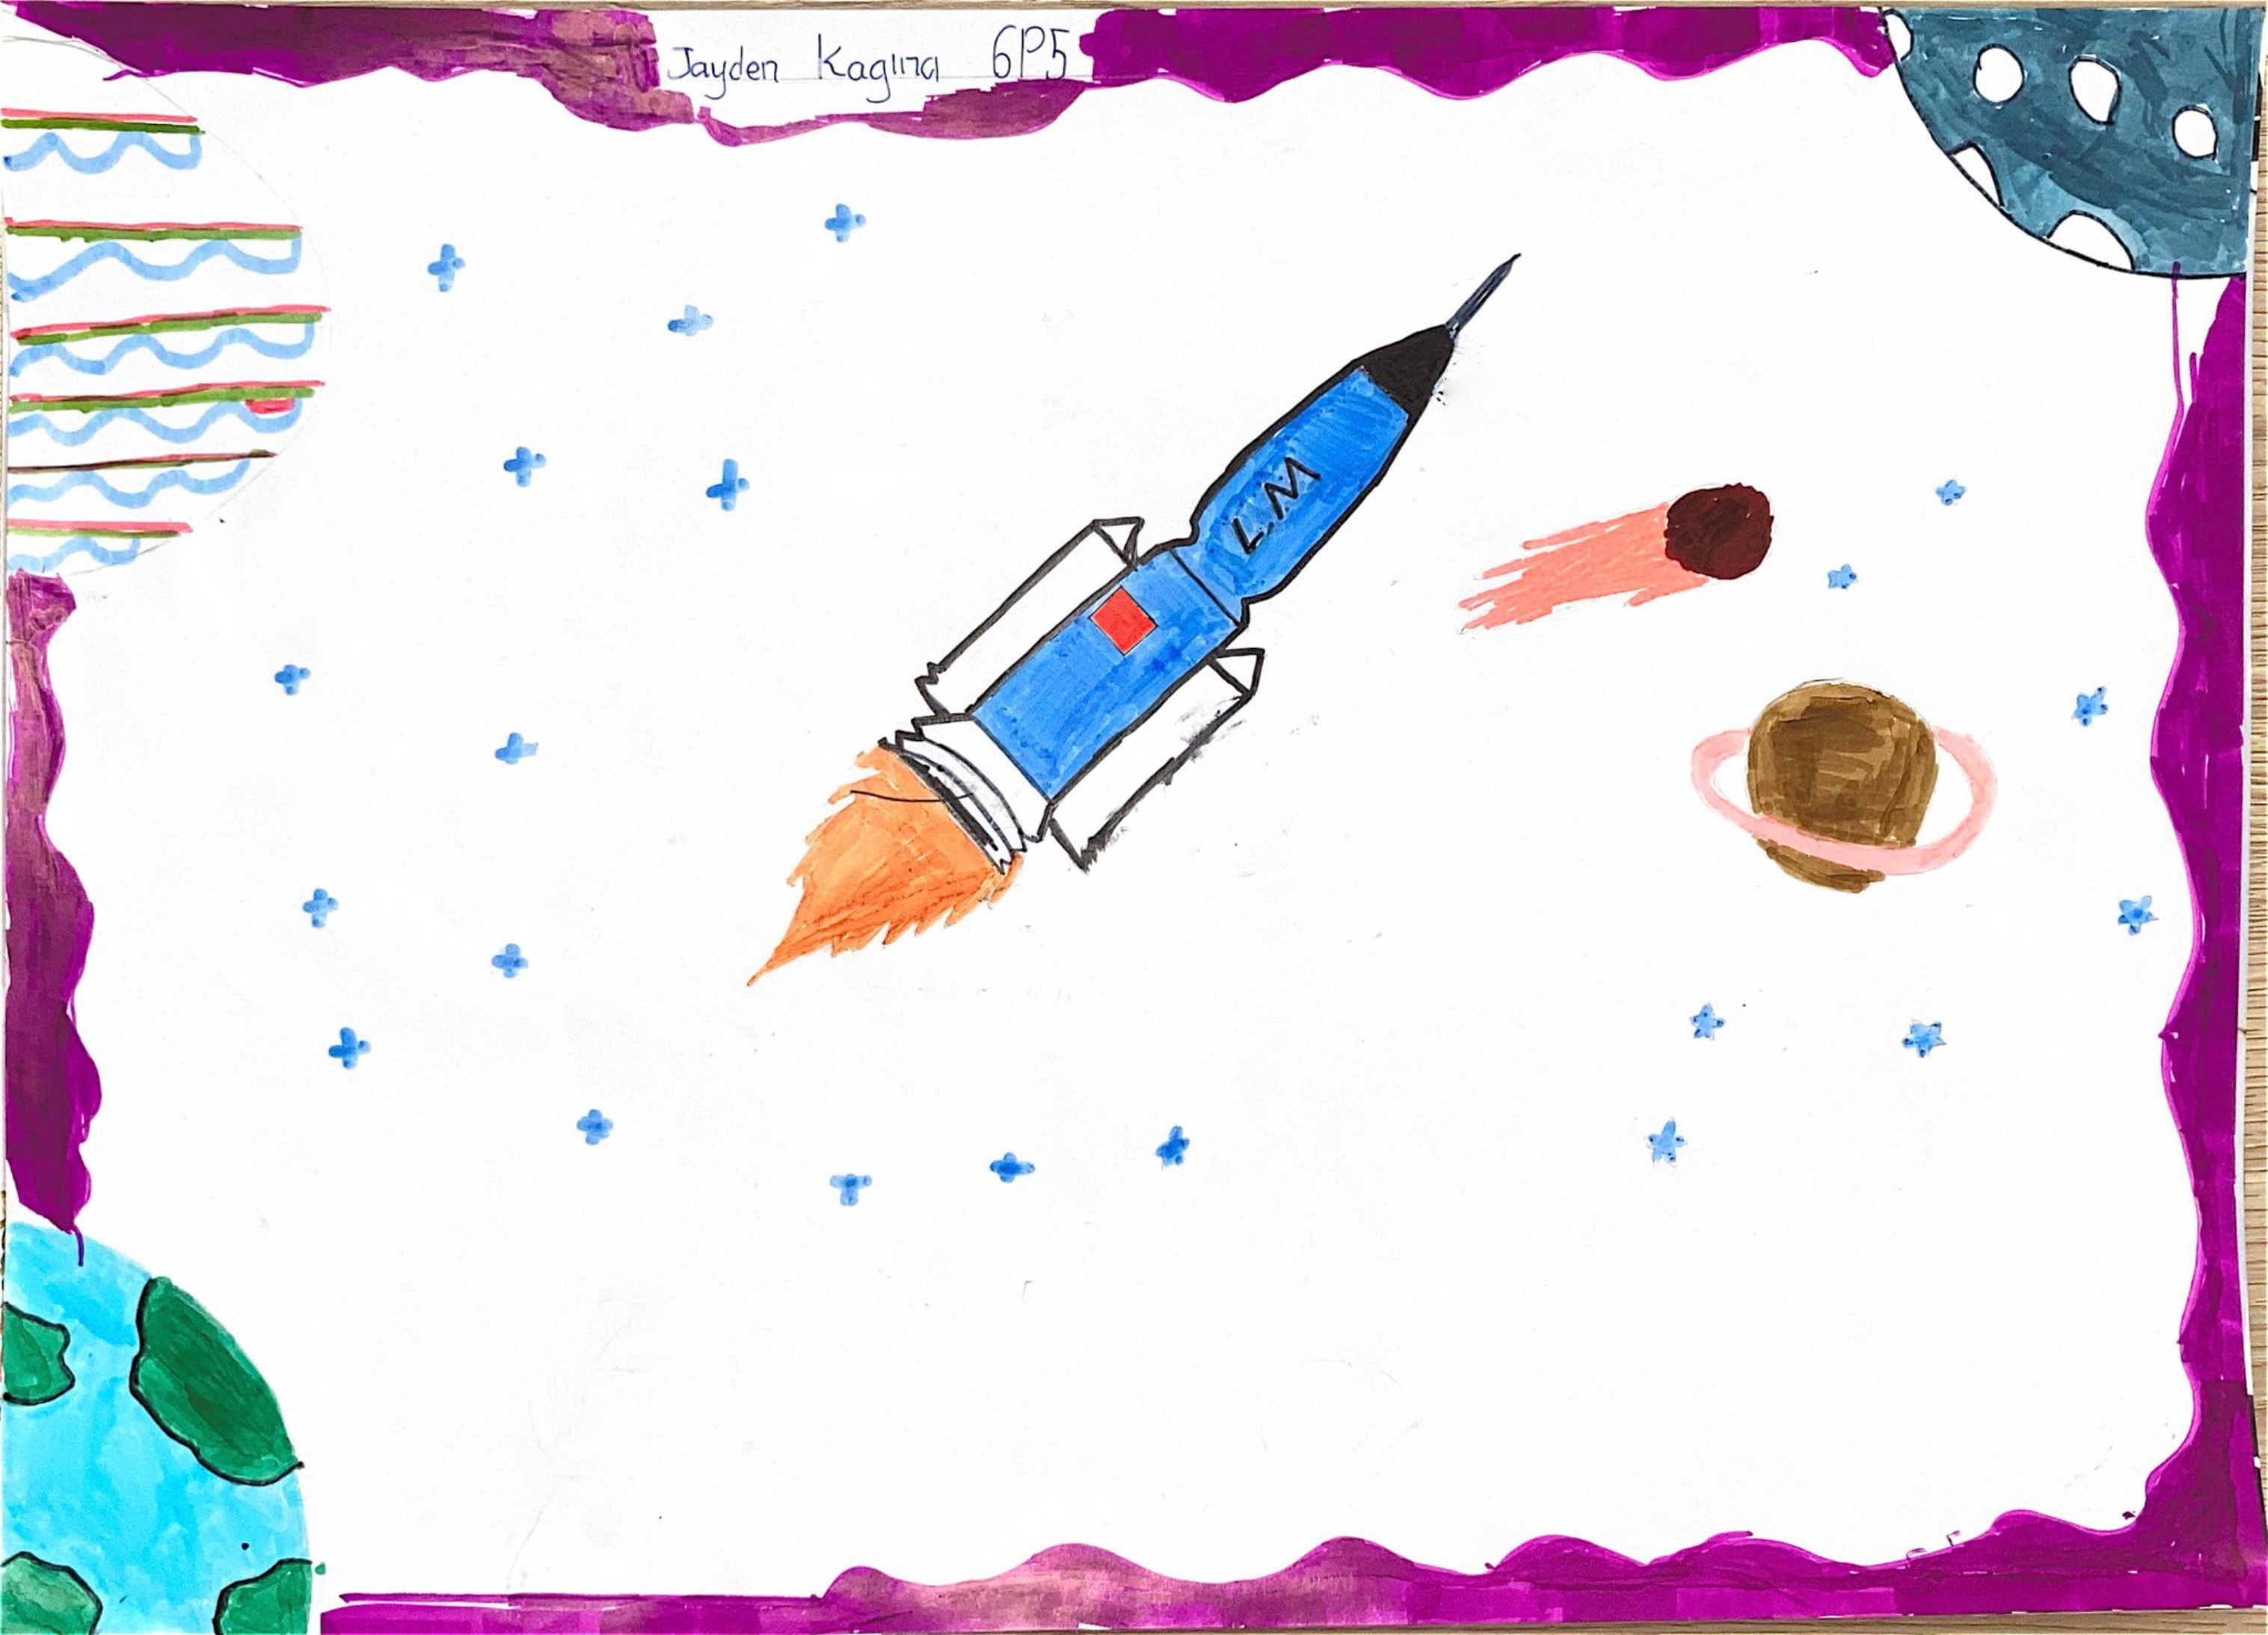 航天日绘画作品《“神舟”与星辰》,肯尼亚杰登·卡吉那（Jayden Kagina）